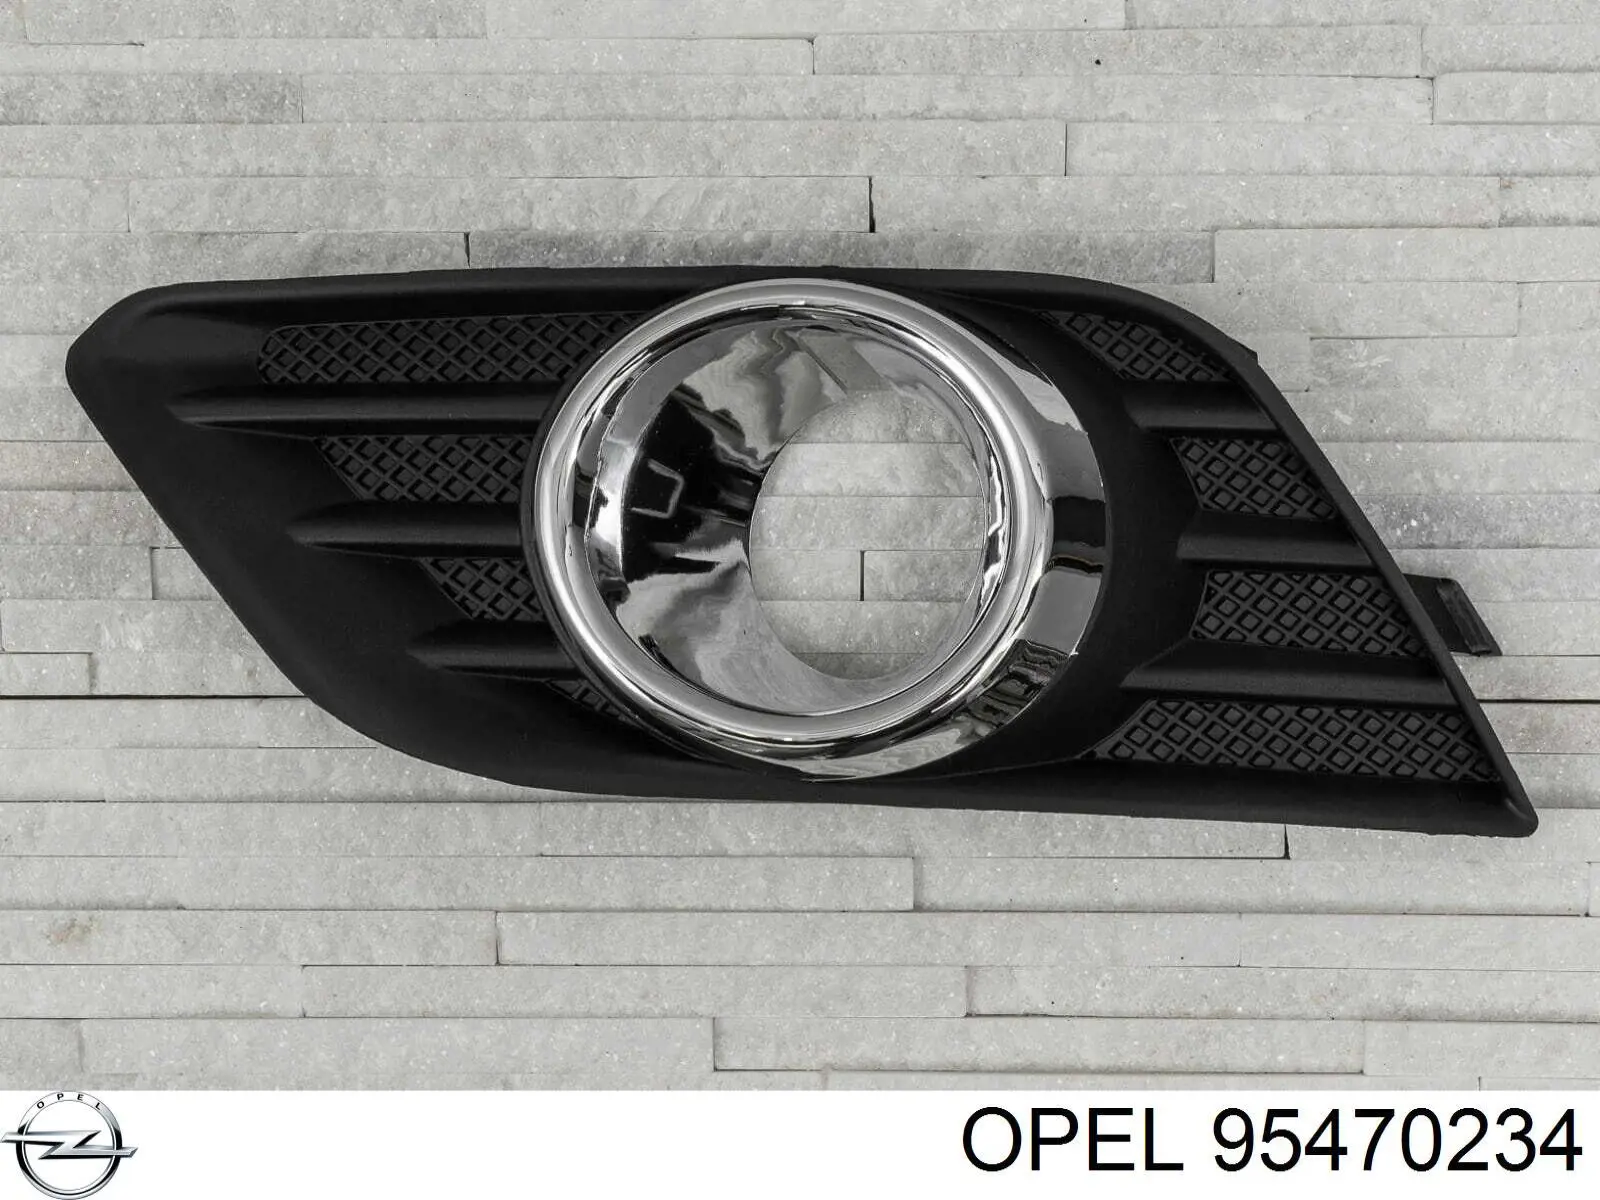 95470234 Opel tampão (grelha das luzes de nevoeiro do pára-choque dianteiro esquerdo)